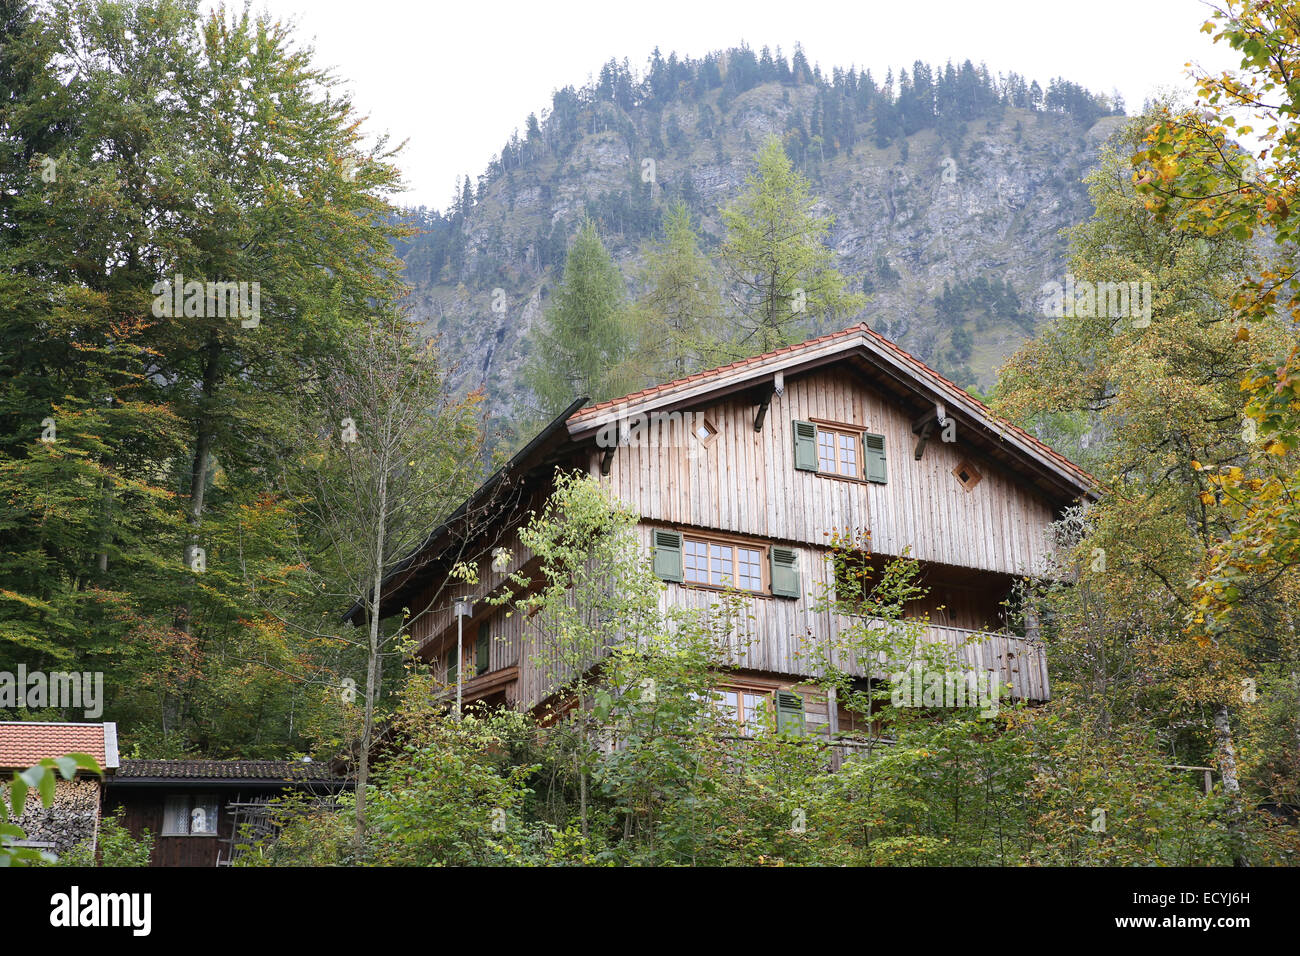 Vieille maison de bois des forêts de montagne Allemagne Banque D'Images